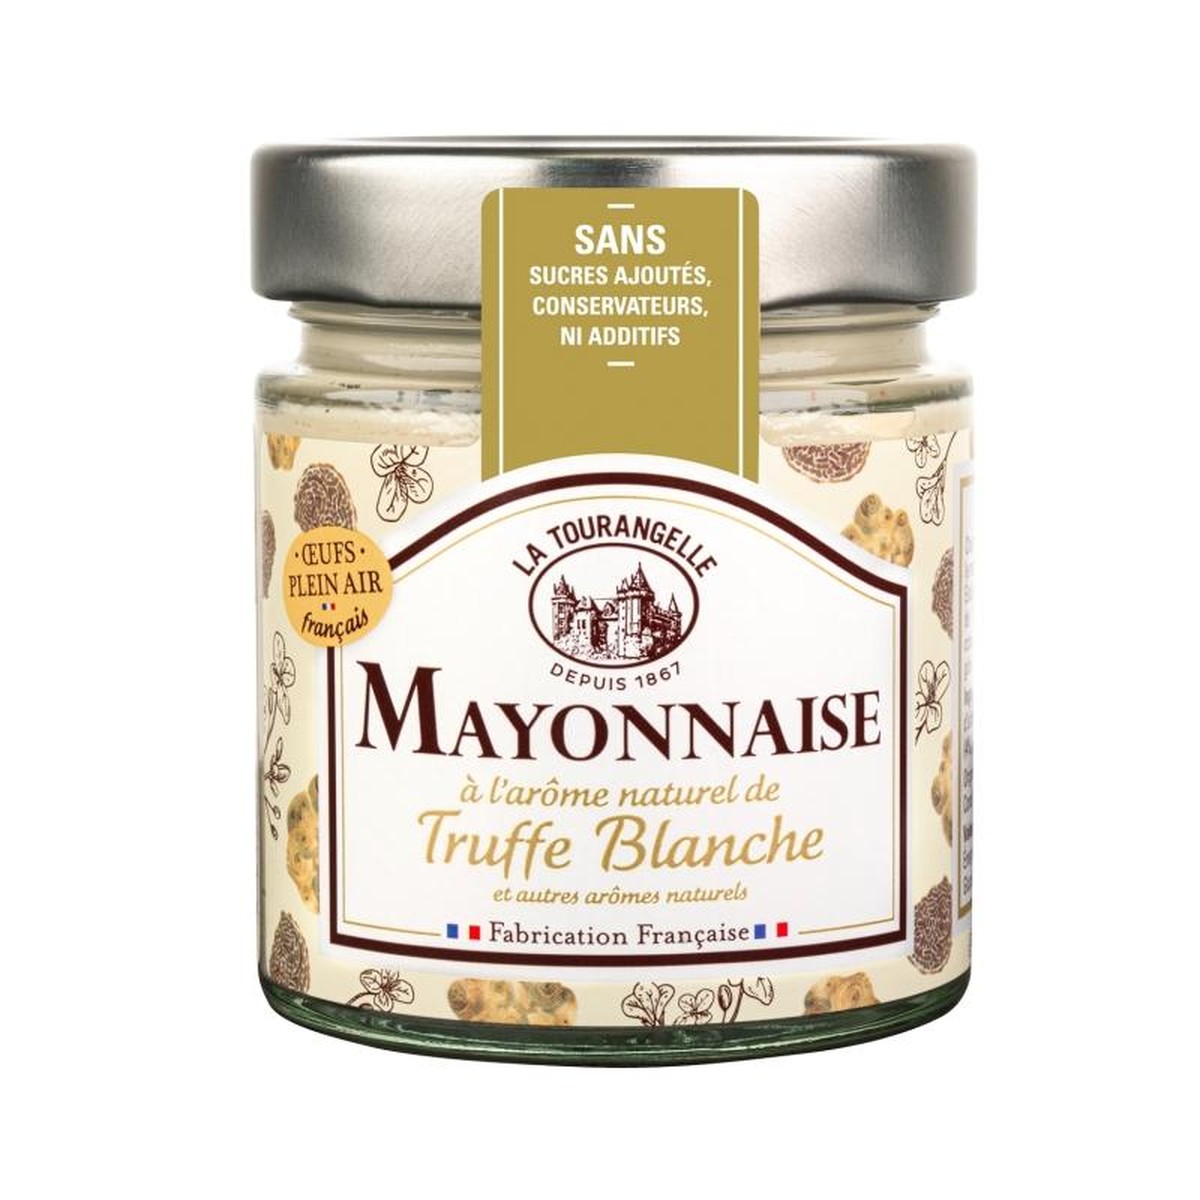   Mayonnaise Arôme Truffe blanche PF192  160g